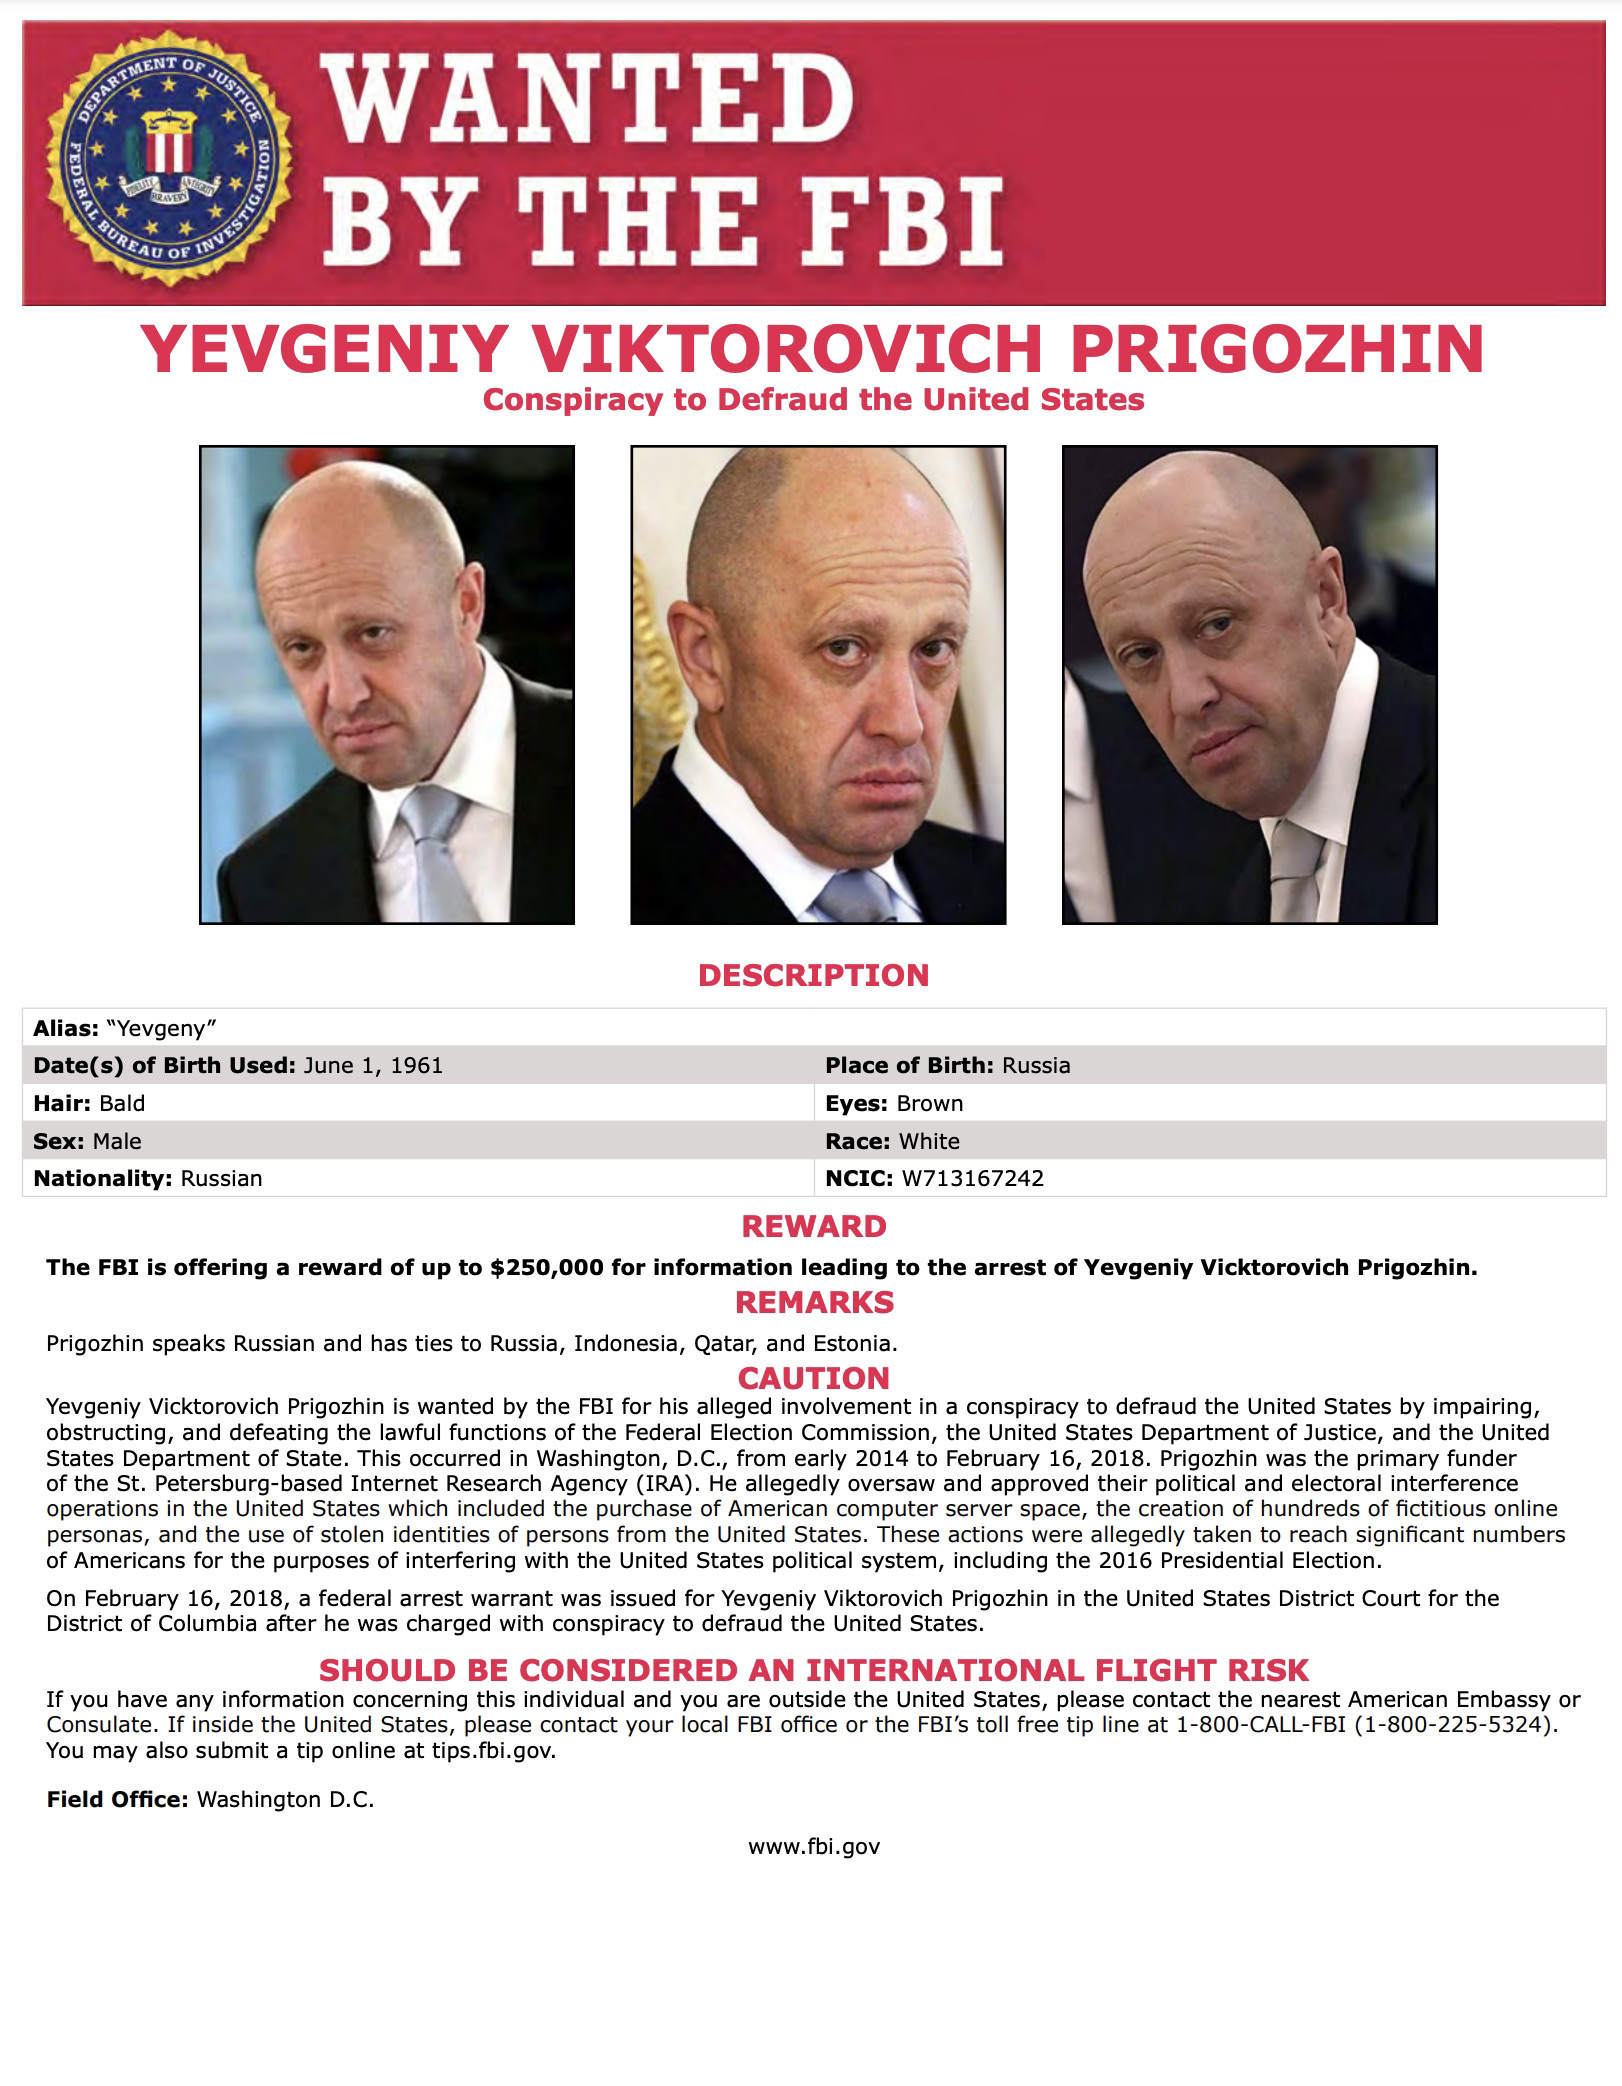 Wanted by FBI: YEVGENIY VIKTOROVICH PRIGOZHIN